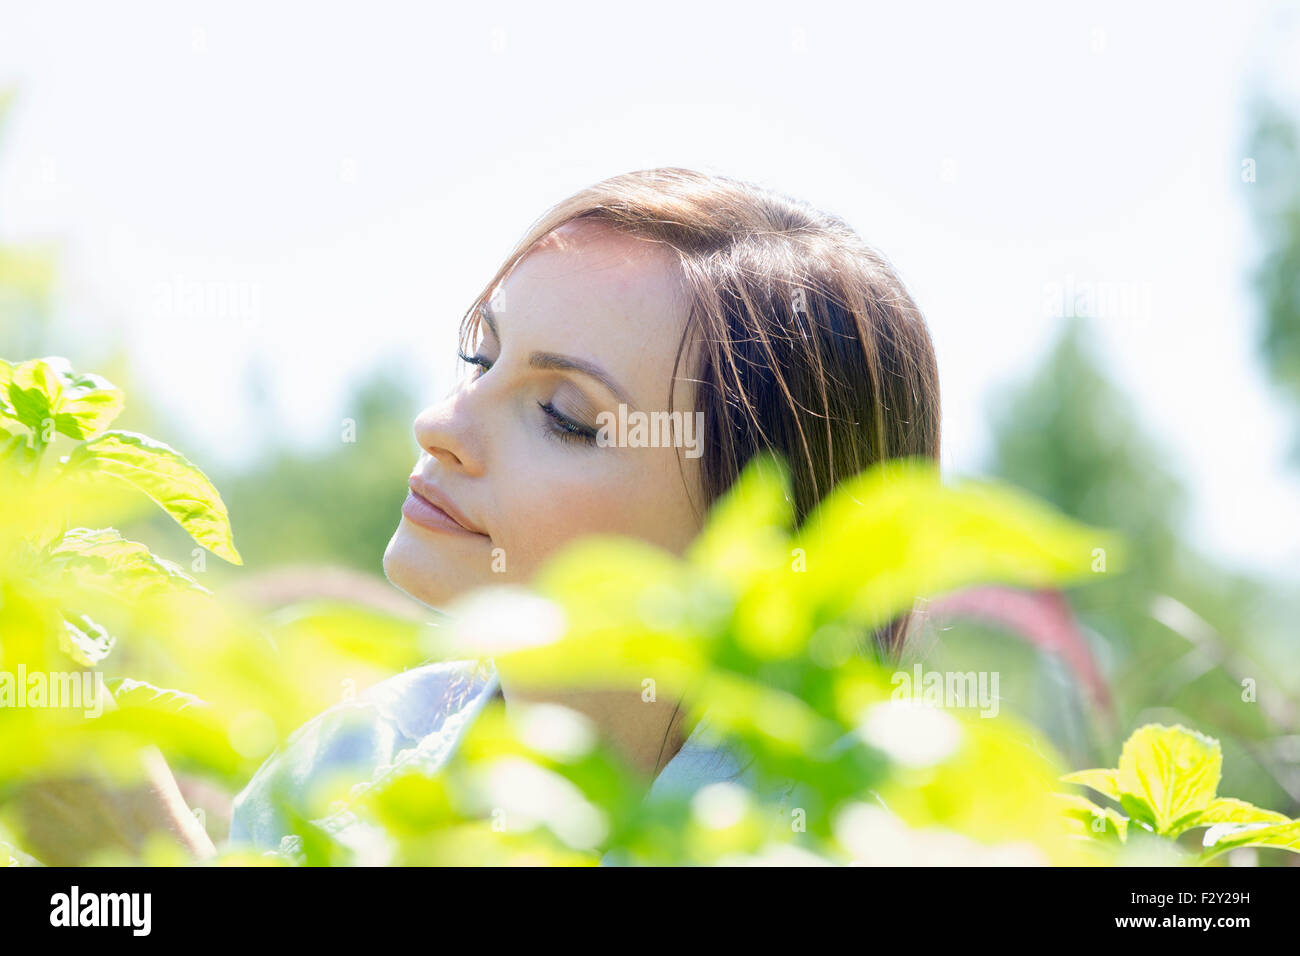 Junge Frau im freien umgeben von grünen Pflanzen. Stockfoto